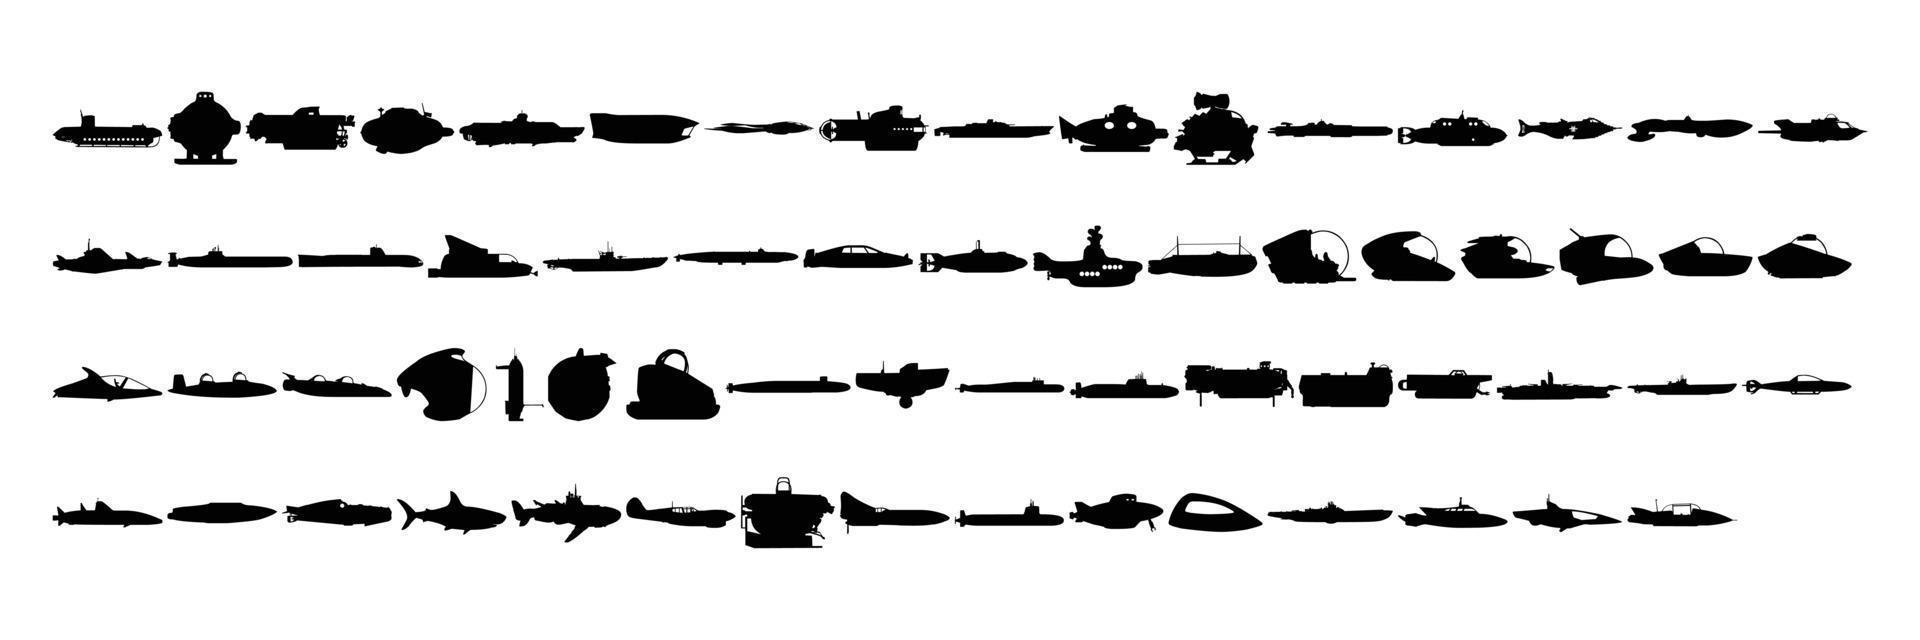 eine sammlung von silhouetten von schiffen, booten und anderen seefahrzeugen für symbole auf weißem hintergrund vektor